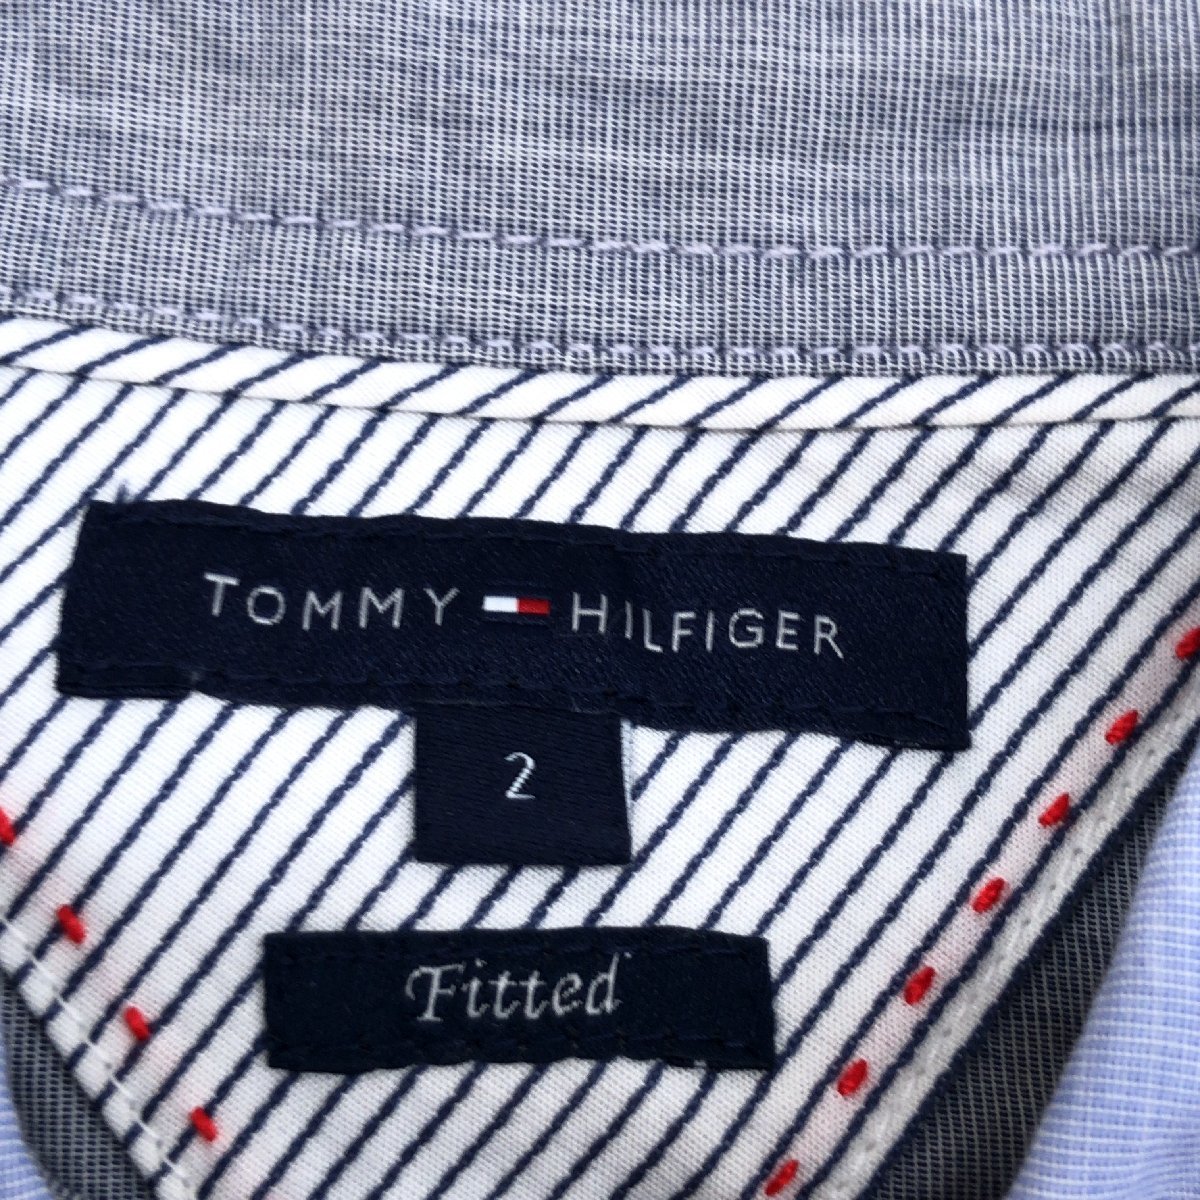 TOMMY HILFIGER トミーヒルフィガー ロゴ刺繍 シャツ 2(M相当) 青系 ブルー系 長袖 ブラウス 国内正規品 レディース 女性用_画像3